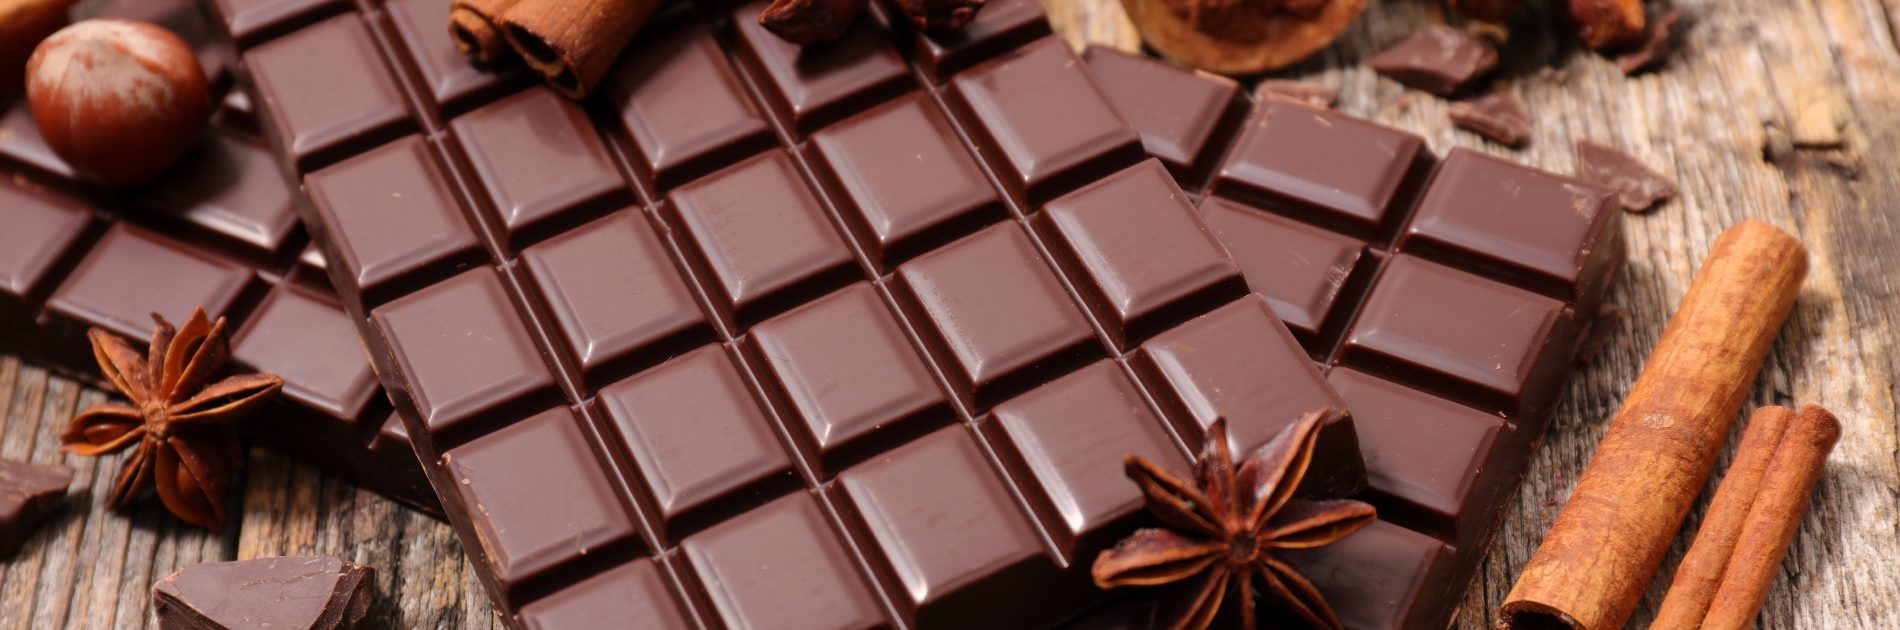 Understanding Chocolate Allergies